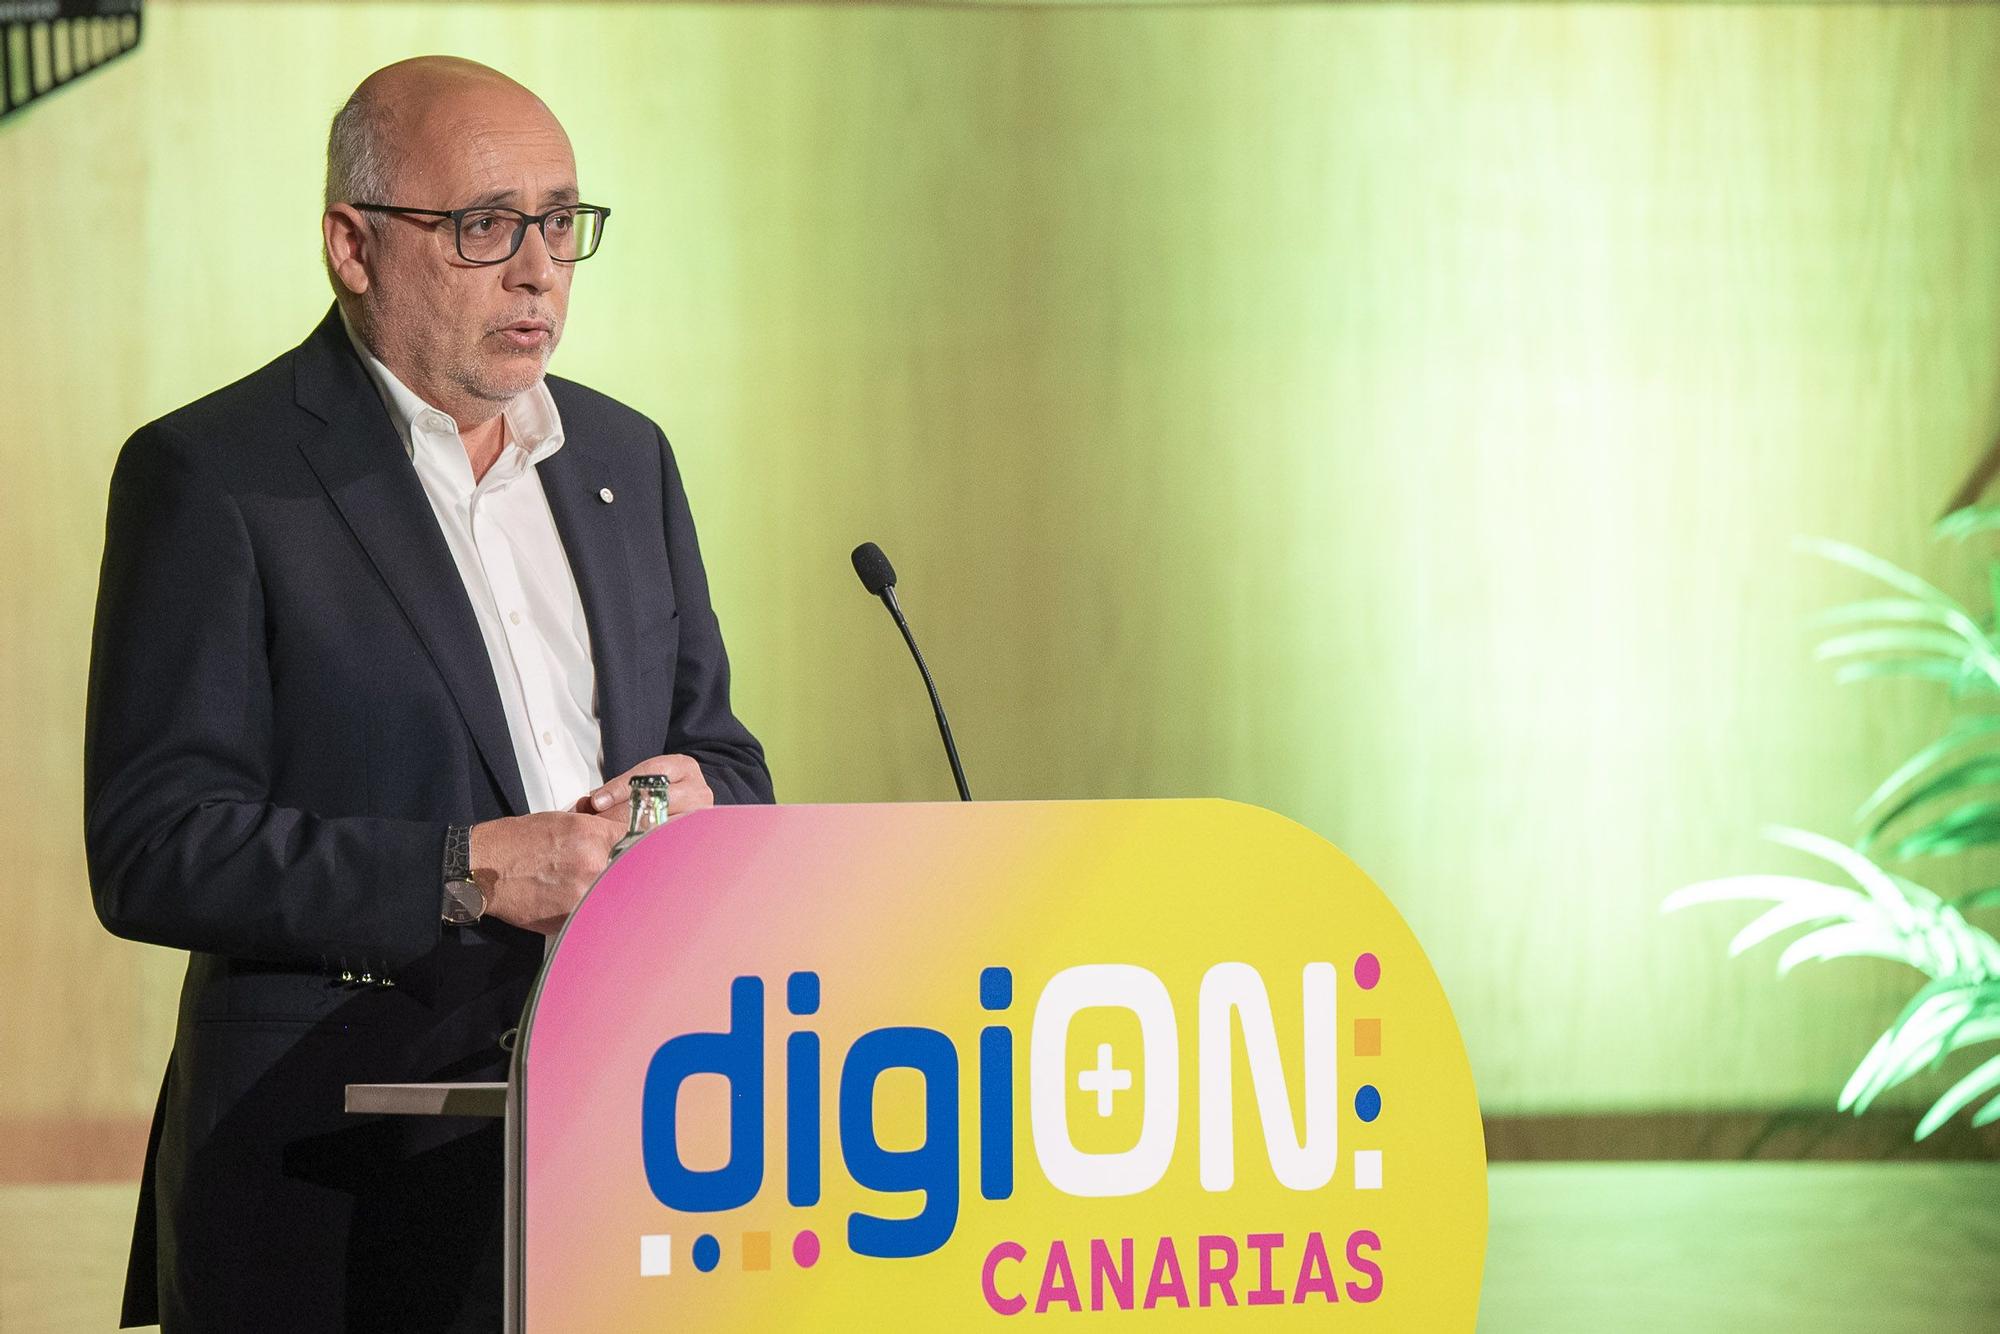 DigiON, Salón de Digitalización Empresarial de Canarias